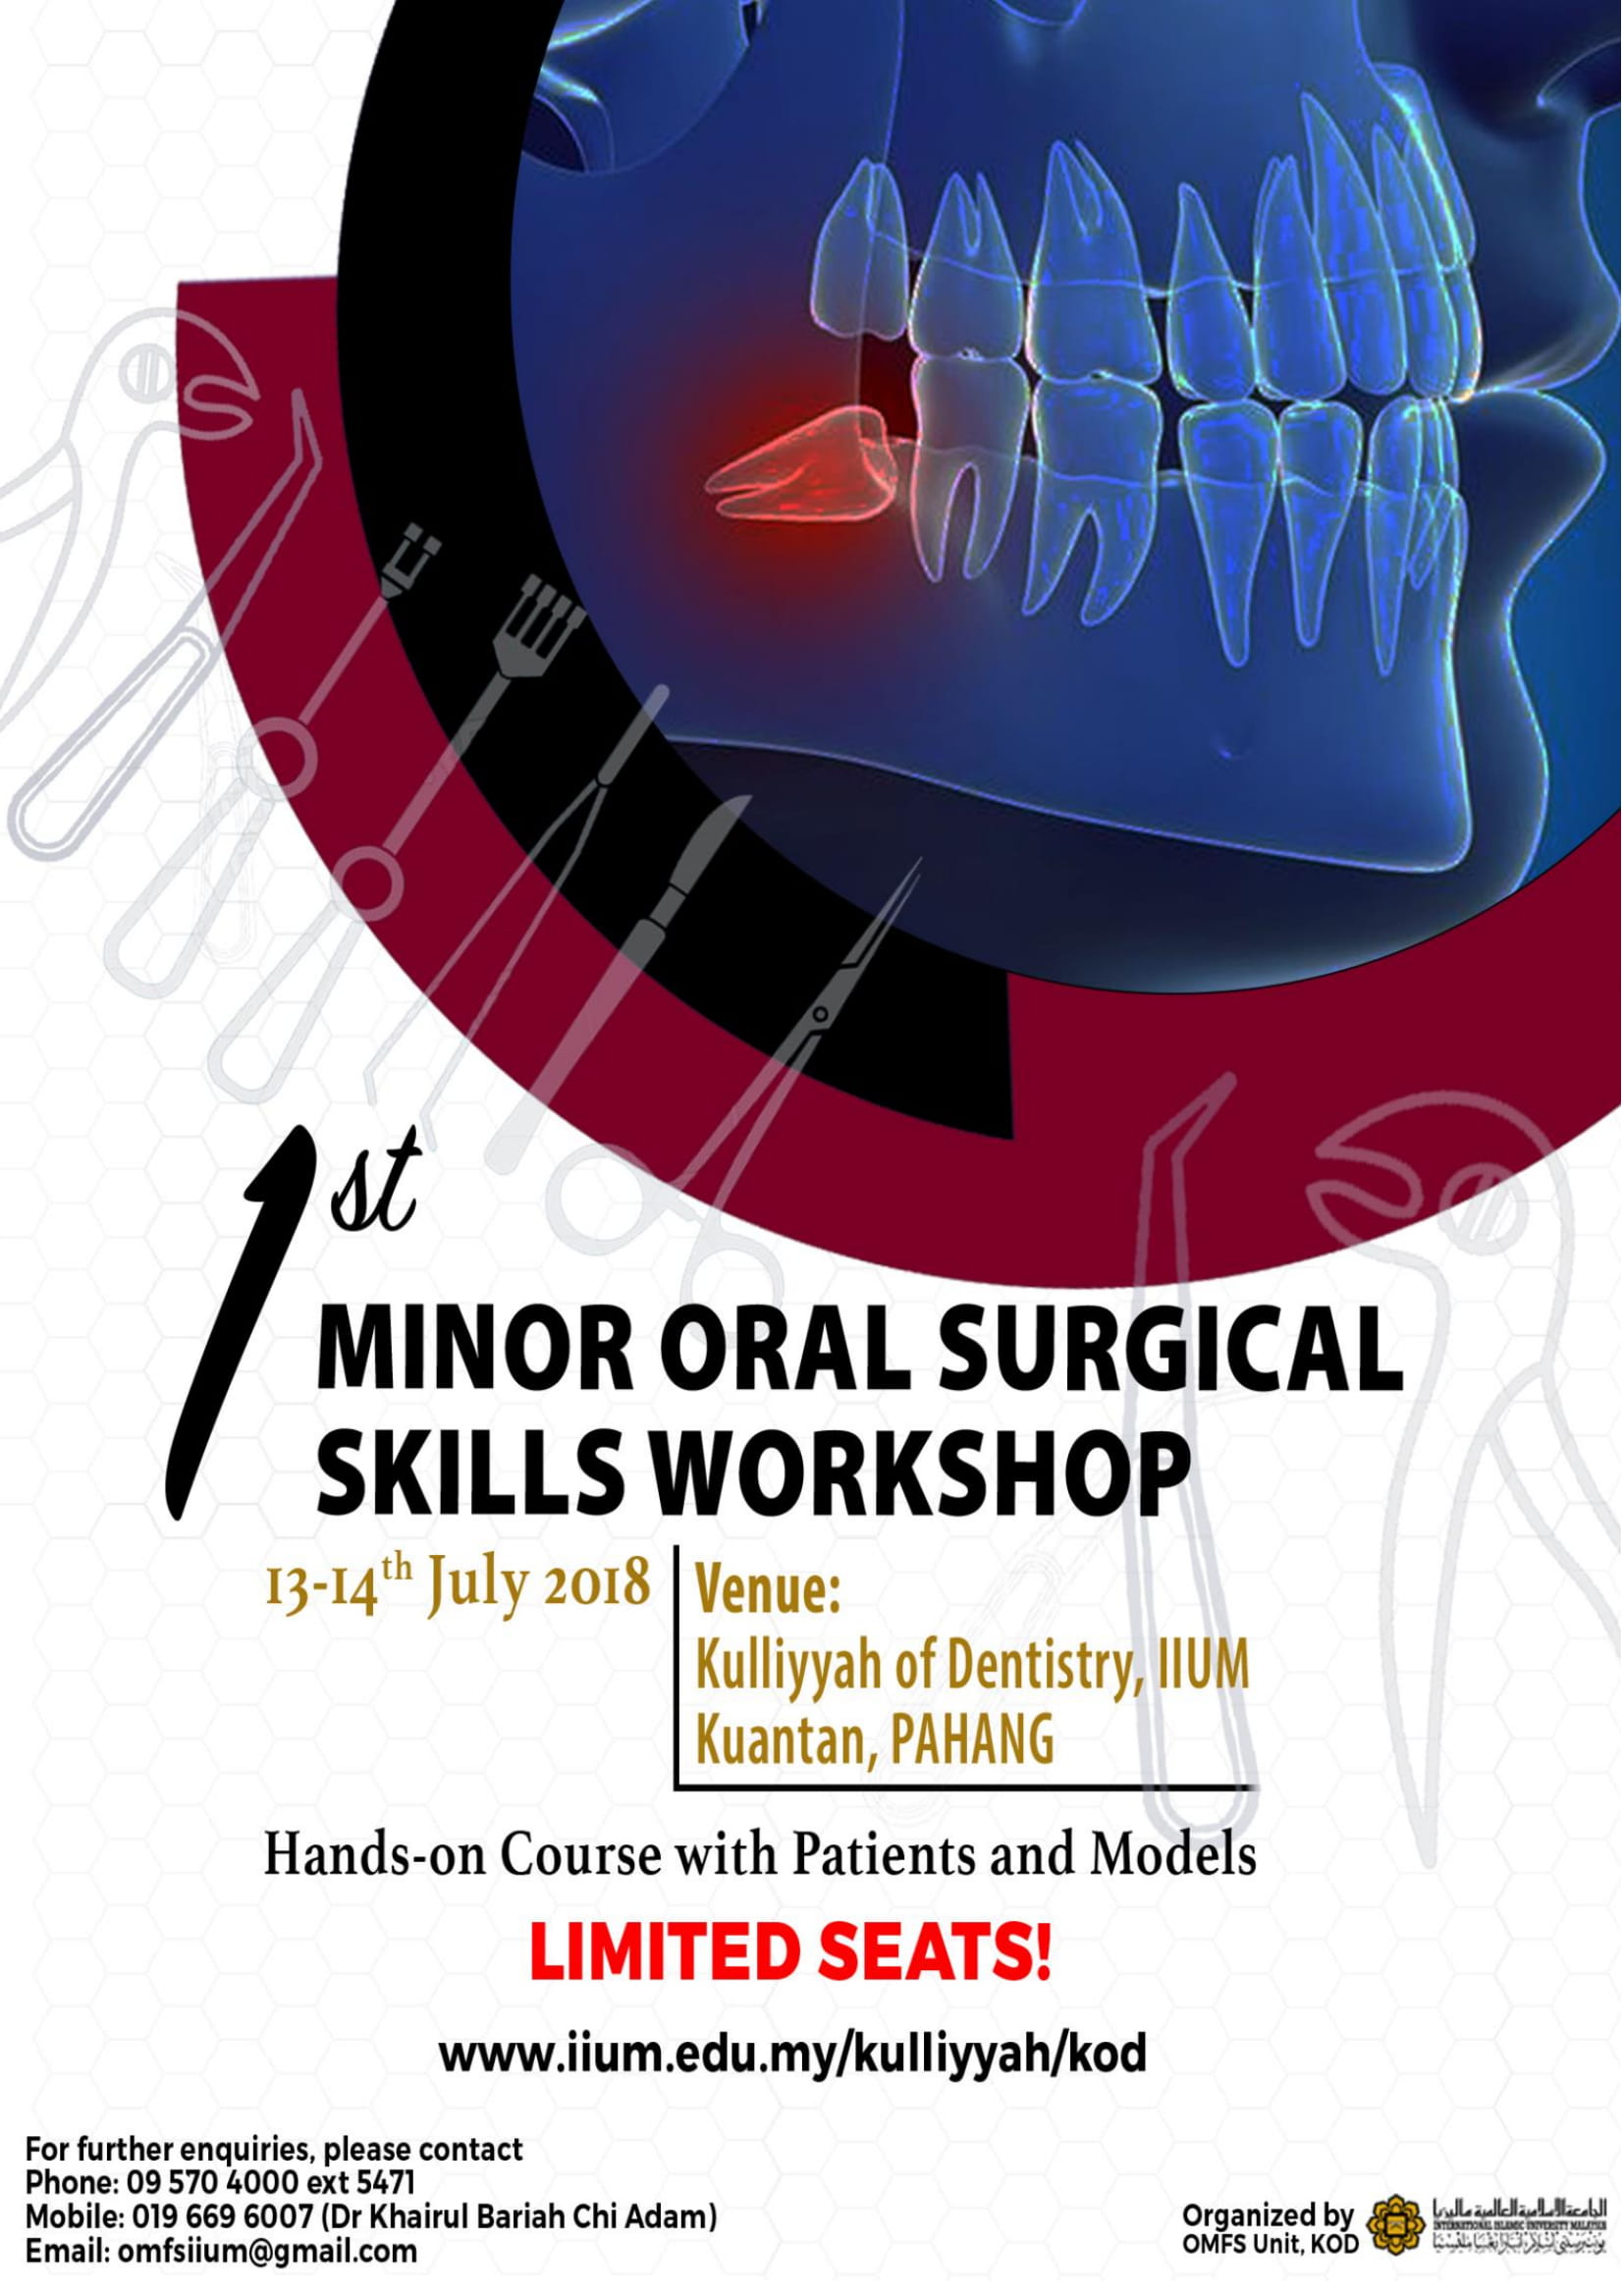 1st Minor Oral Surgical Skills Workshop